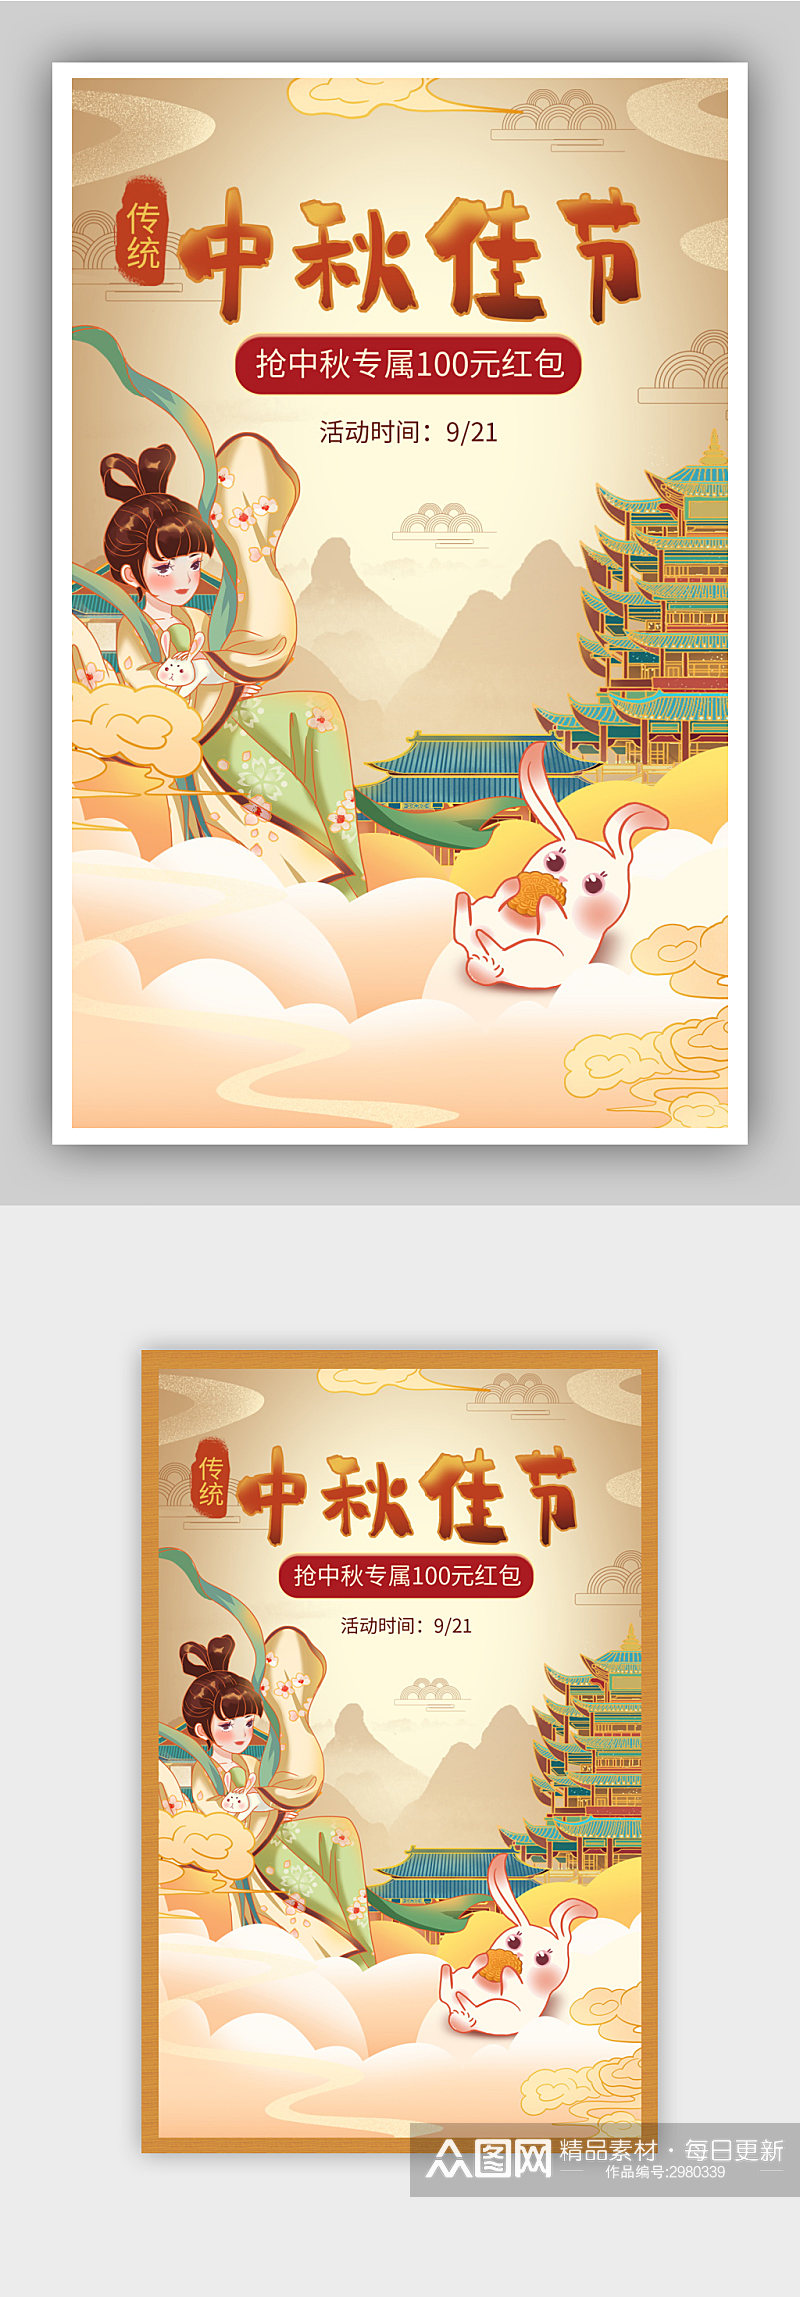 中秋节促销手绘海报素材